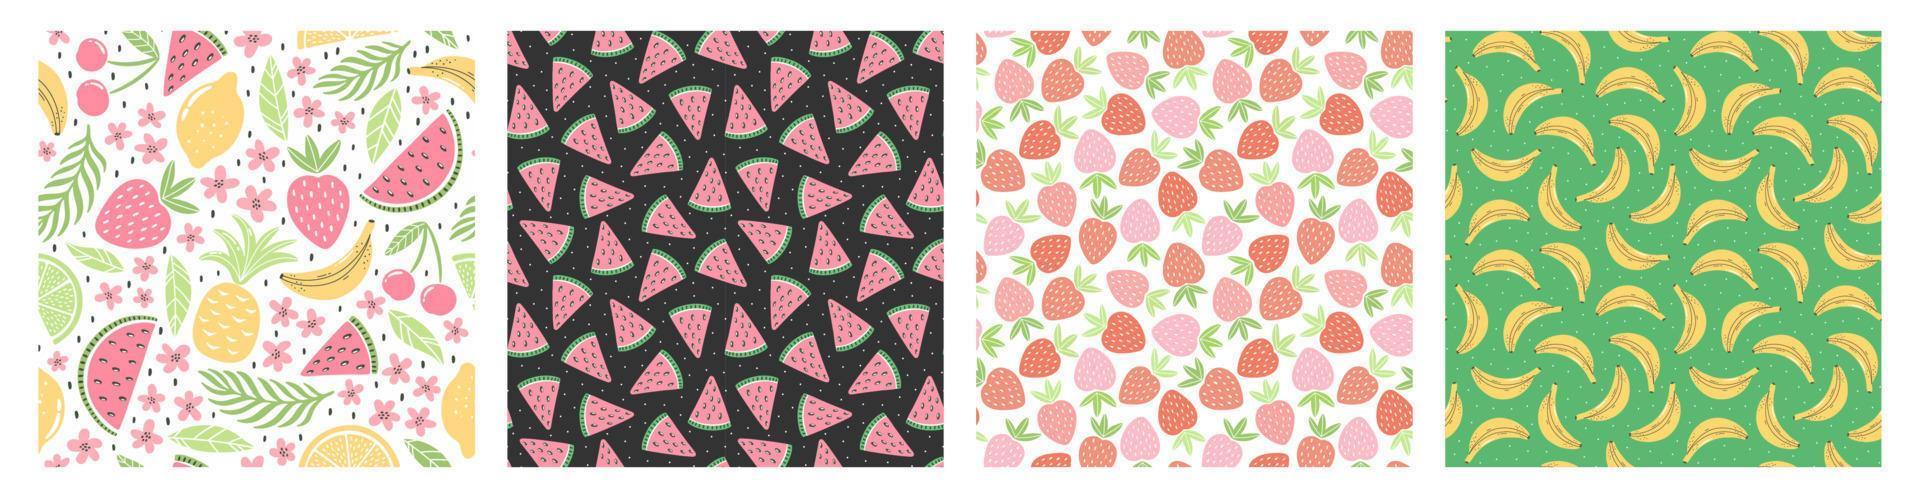 Reihe von nahtlosen Mustern mit bunten Früchten für Textildesign. Sommerhintergrund in hellen Farben. handgezeichnete trendige Vektorgrafiken. vektor